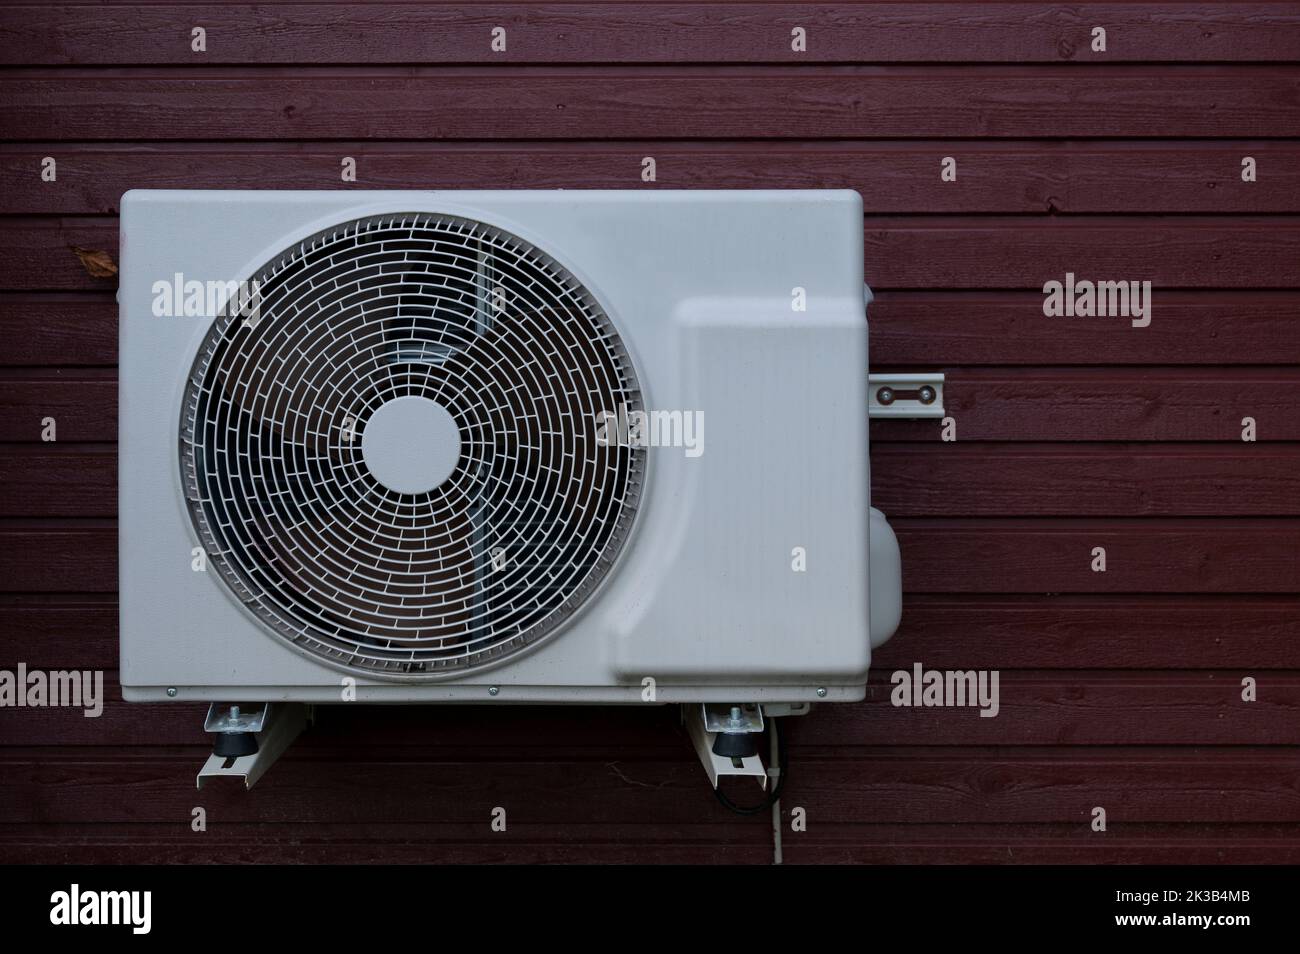 Risparmiate energia elettrica con un'unità pompa di calore bianca montata su un pannello di legno rosso, Danimarca, 22 settembre 2022 Foto Stock